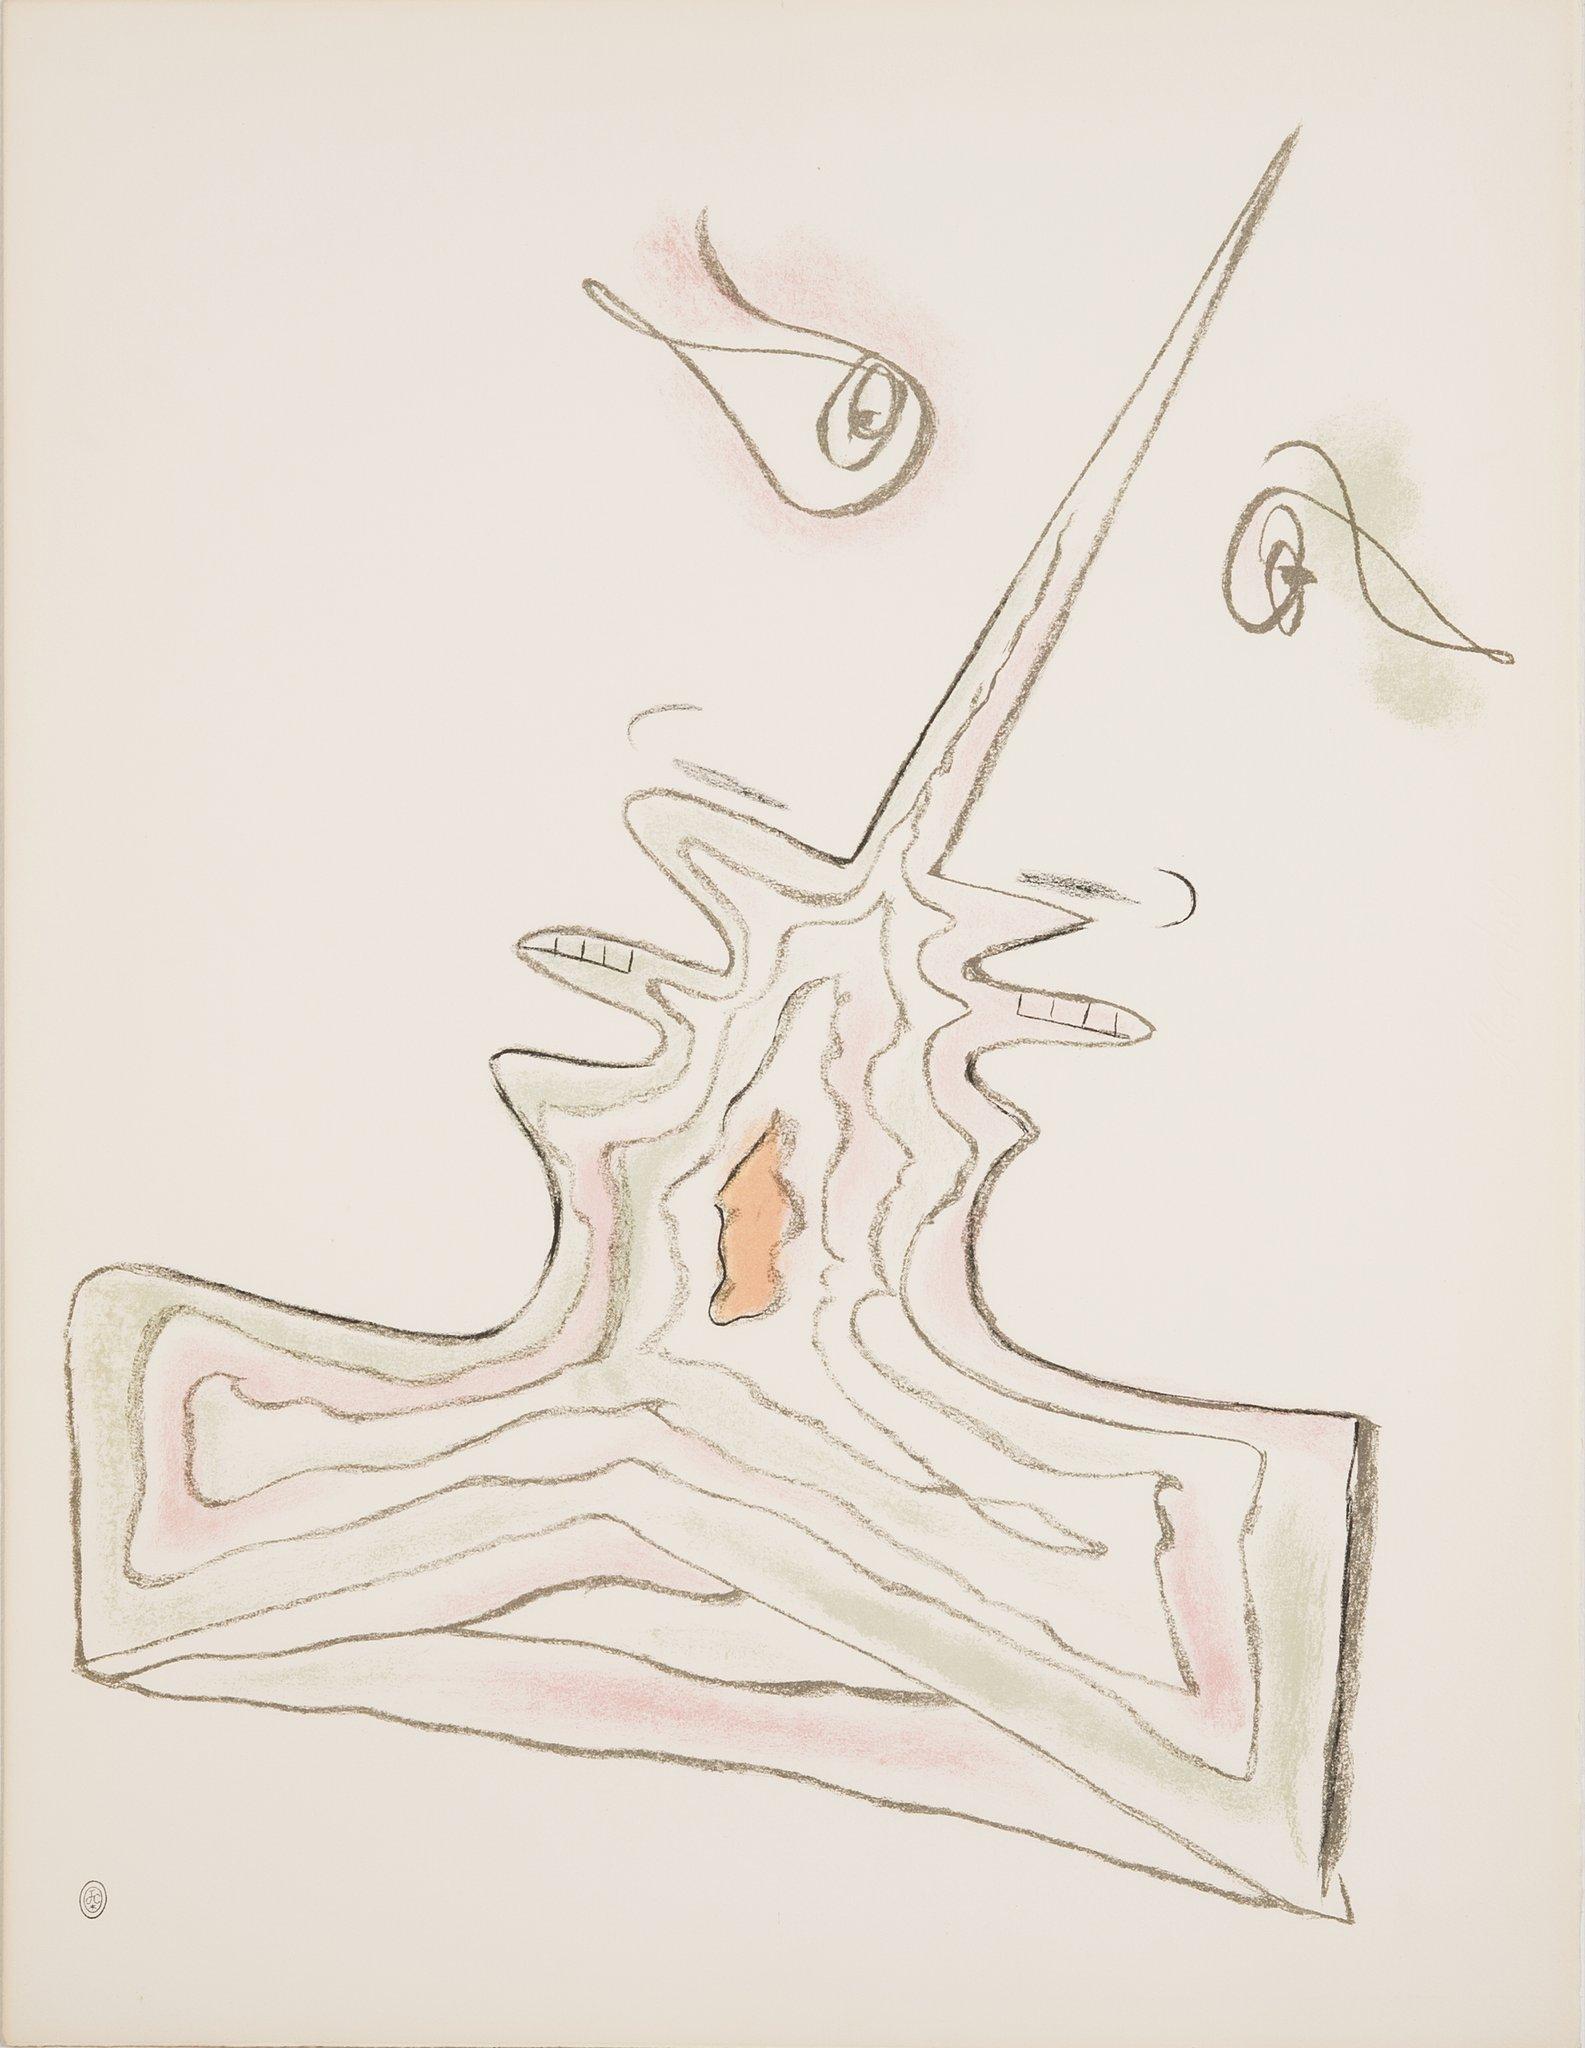 Die moderne Lithographie "Les Amoureux" von Jean Cocteau wurde 1957 im Atelier Mourlot gedruckt. Cocteau war ein Meister darin, die schwachen Formen seiner Motive in Skizzen darzustellen. Oft verwendete er nicht mehr als fünf oder sechs Zeilen, um